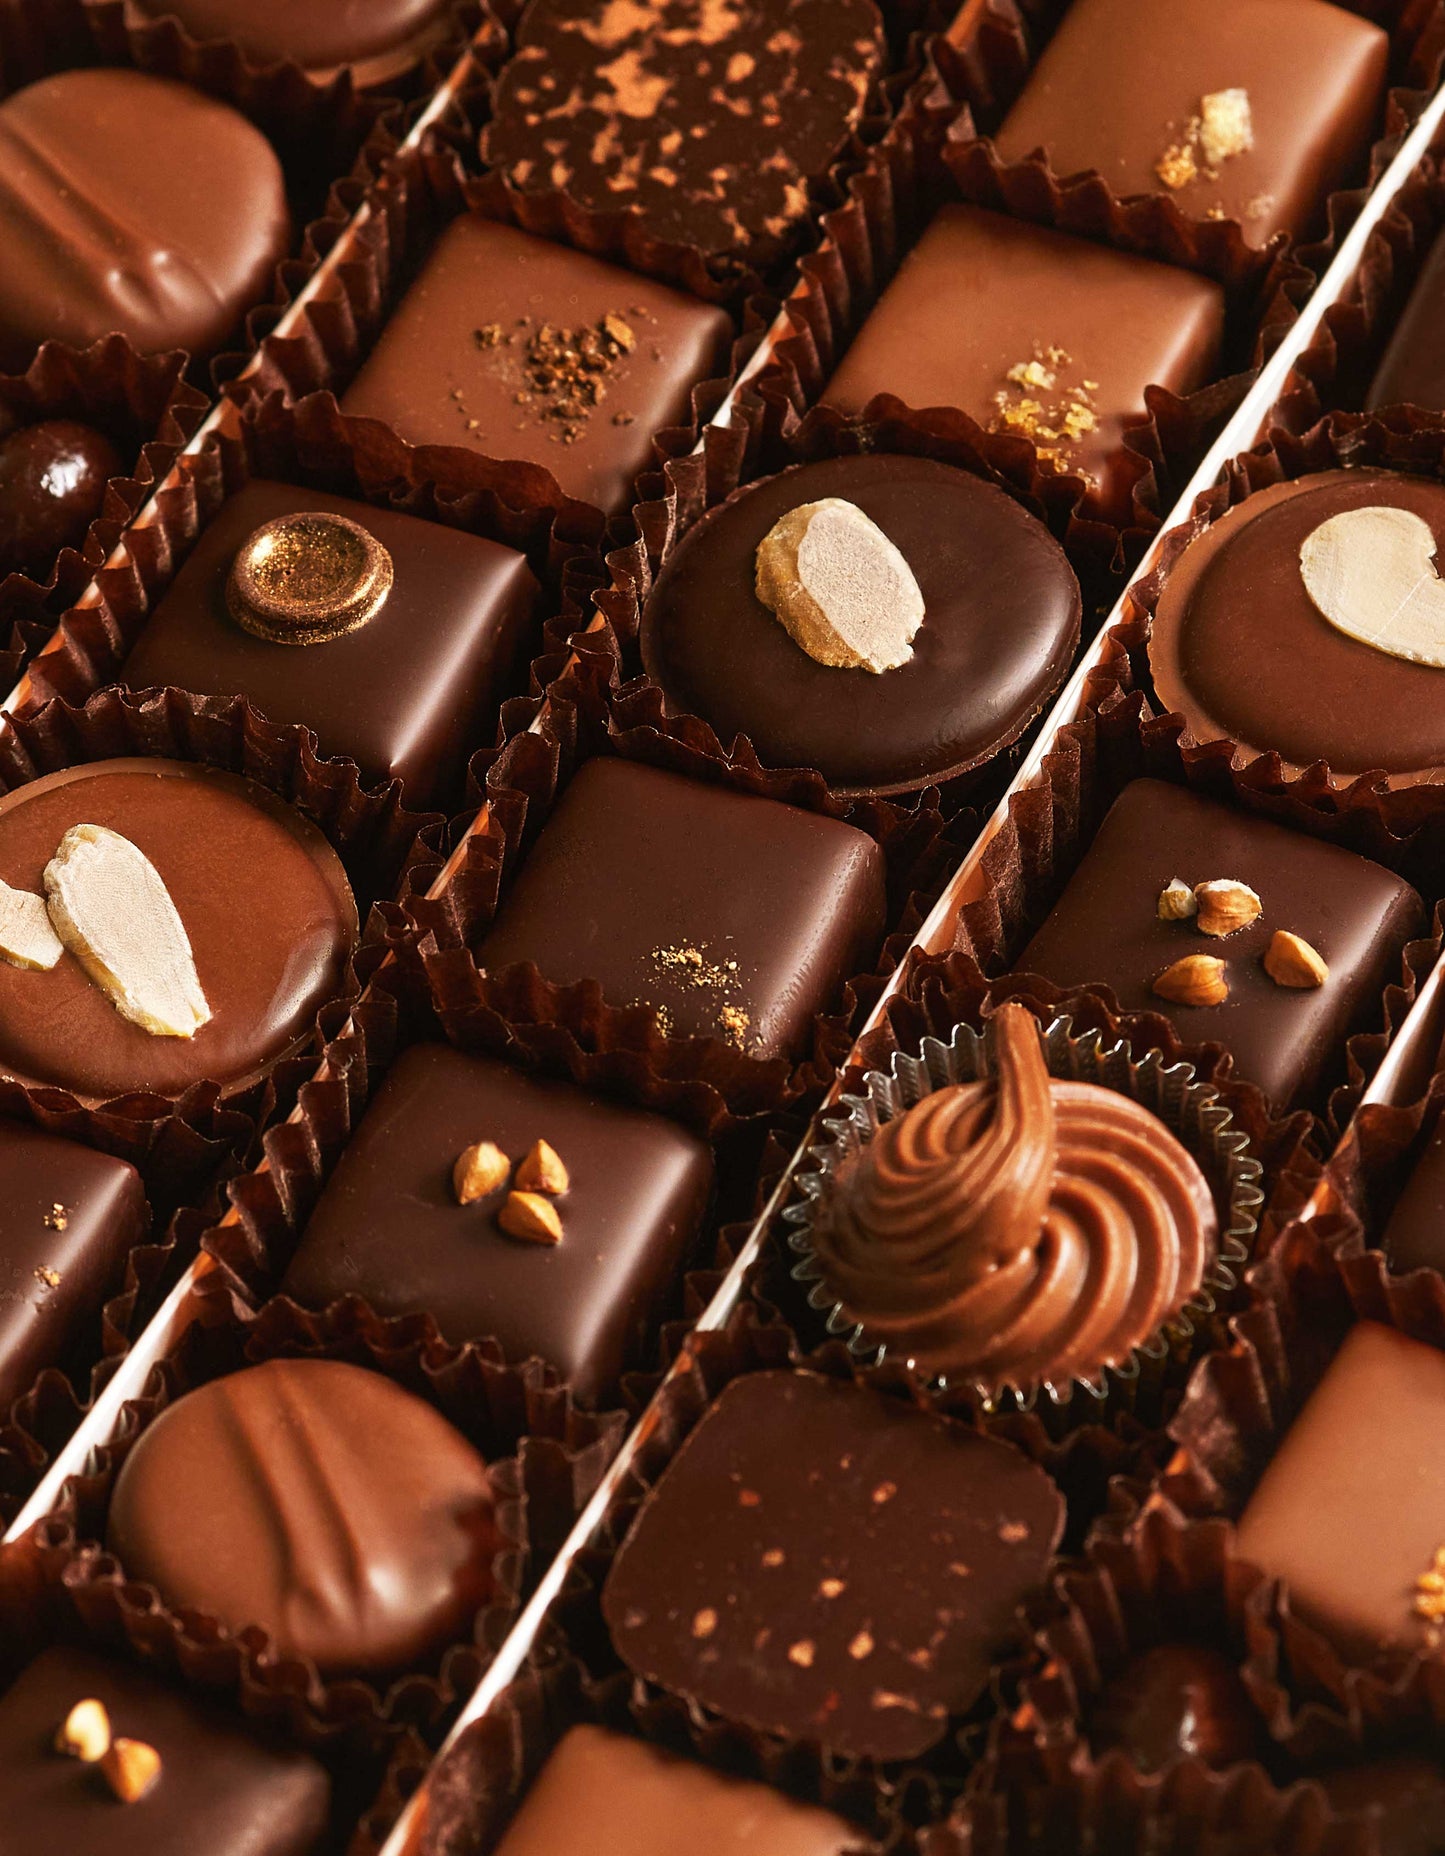 Les chocolats Noirs et Laits (126 chocolats)